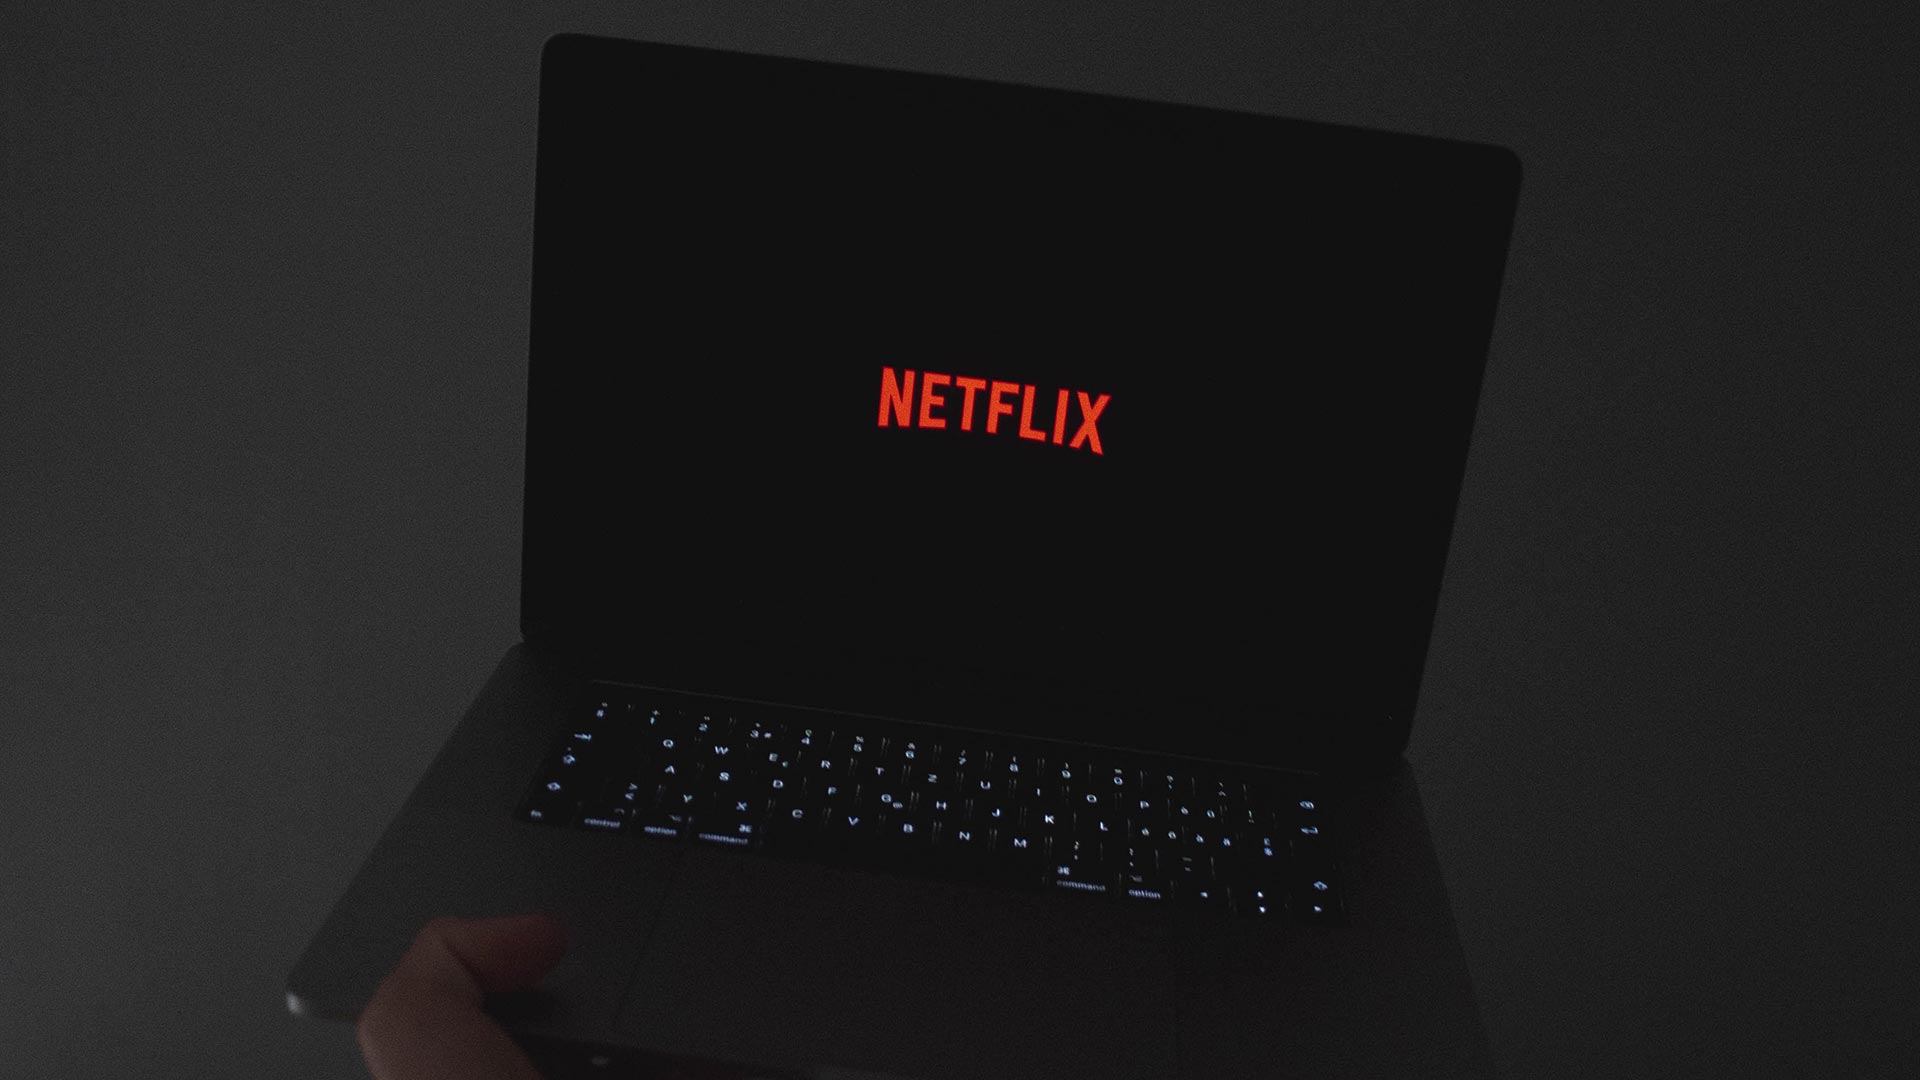 Netflix estará disponible en Movistar+ a partir de diciembre